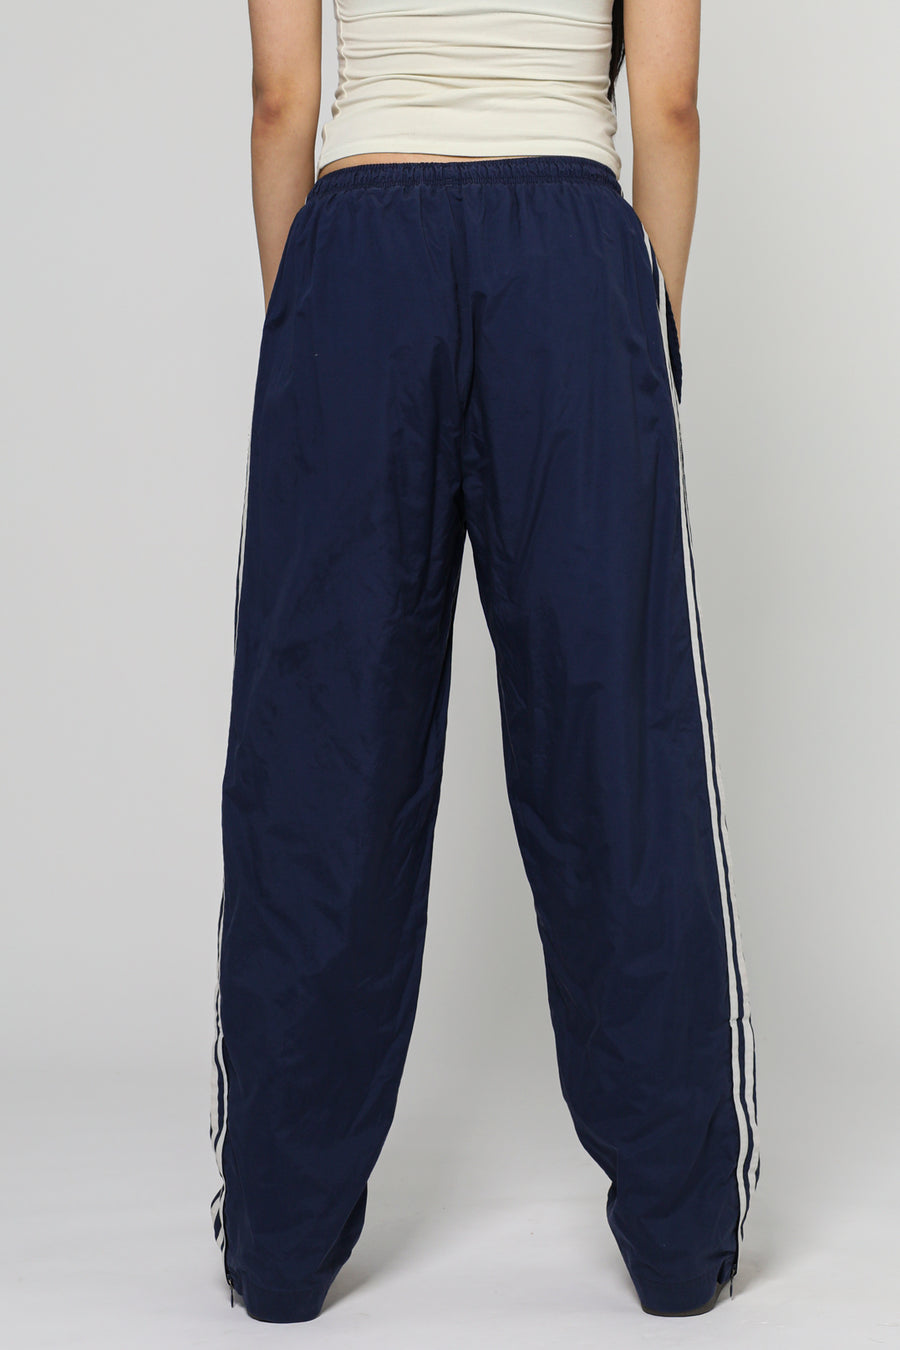 Vintage Adidas Windbreaker Pants - XS, S, M, L, XL